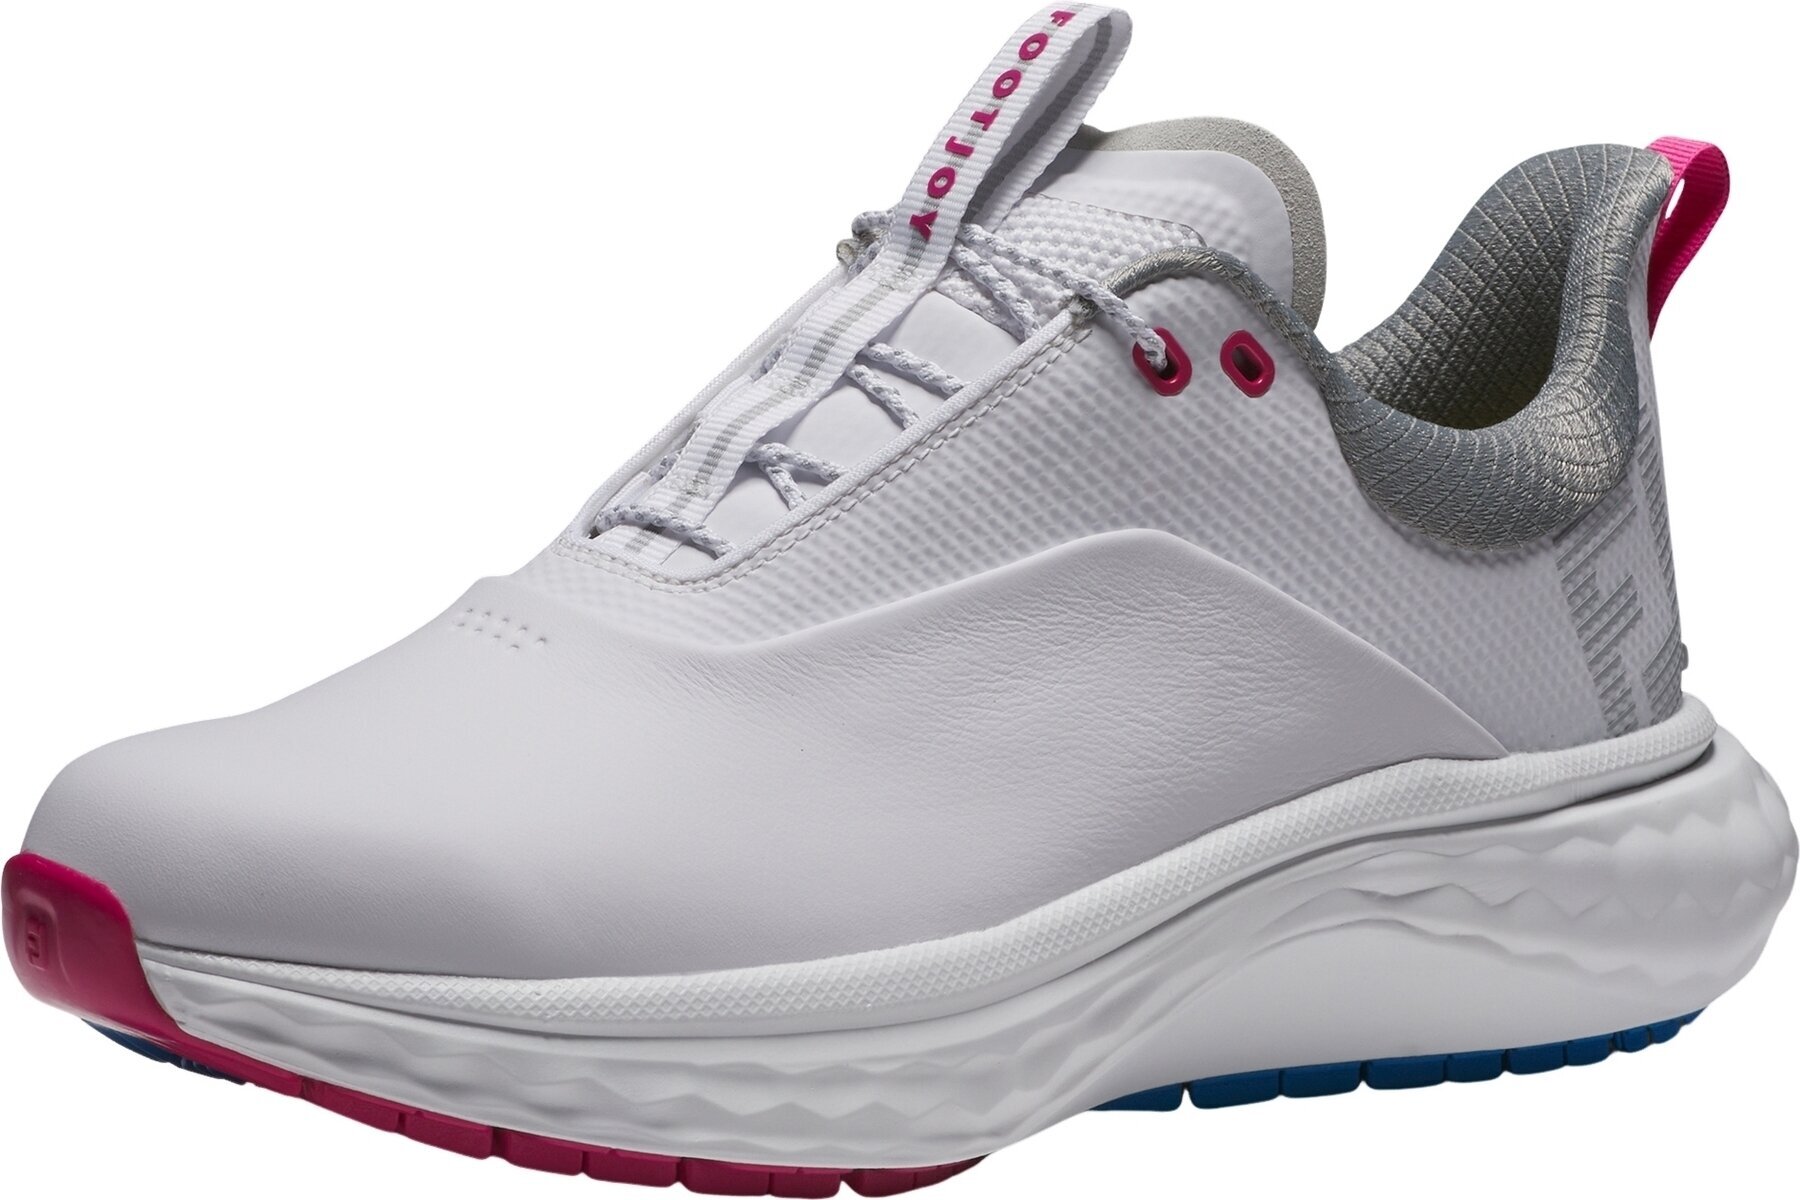 Calzado de golf de mujer Footjoy Quantum Womens Golf Shoes White/Blue/Pink 38,5 Calzado de golf de mujer